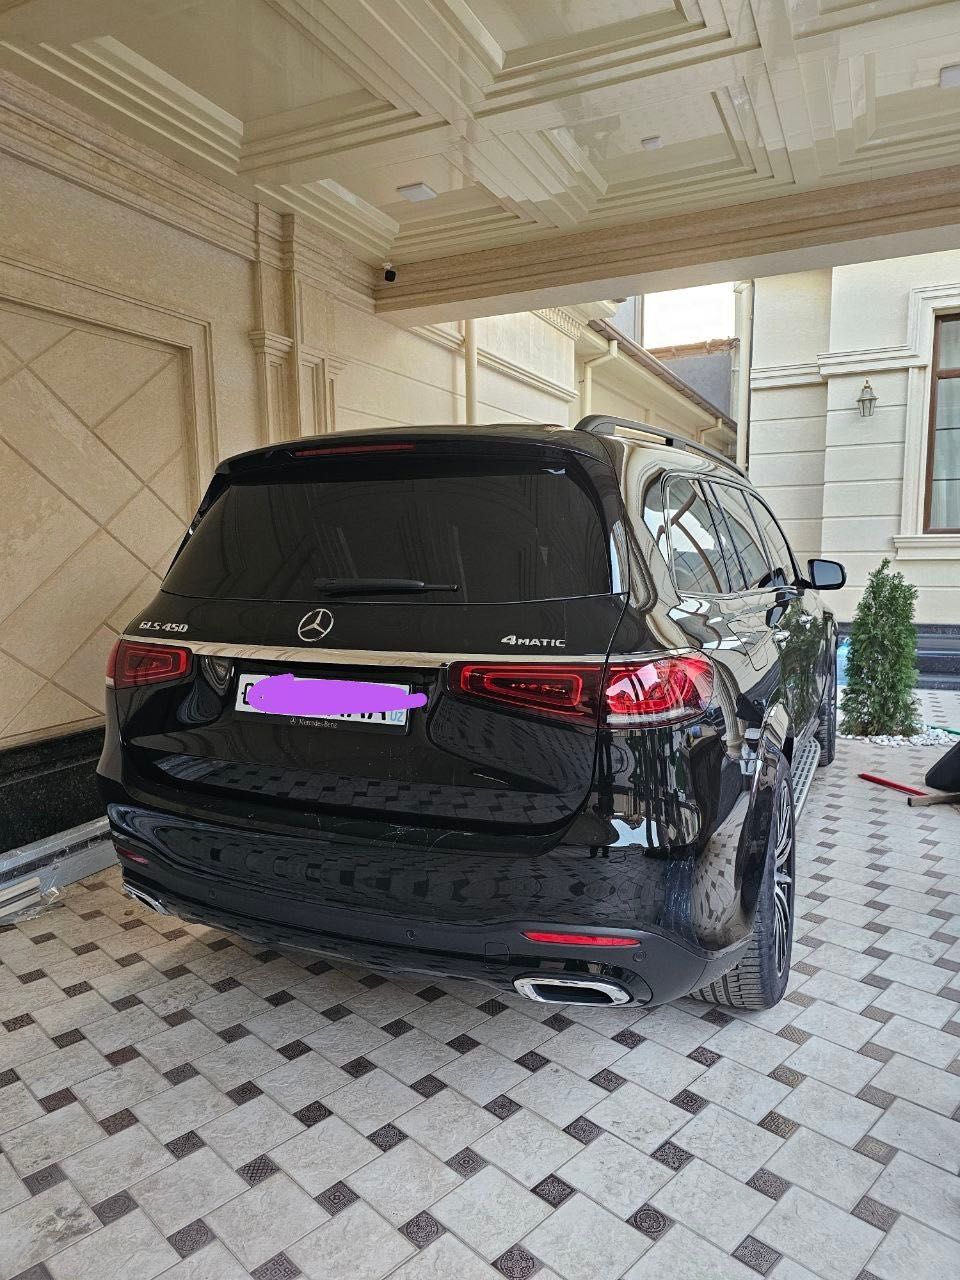 Mercedes-benz GLS 450 Продаю срочно машина новая шоколад  полный фул